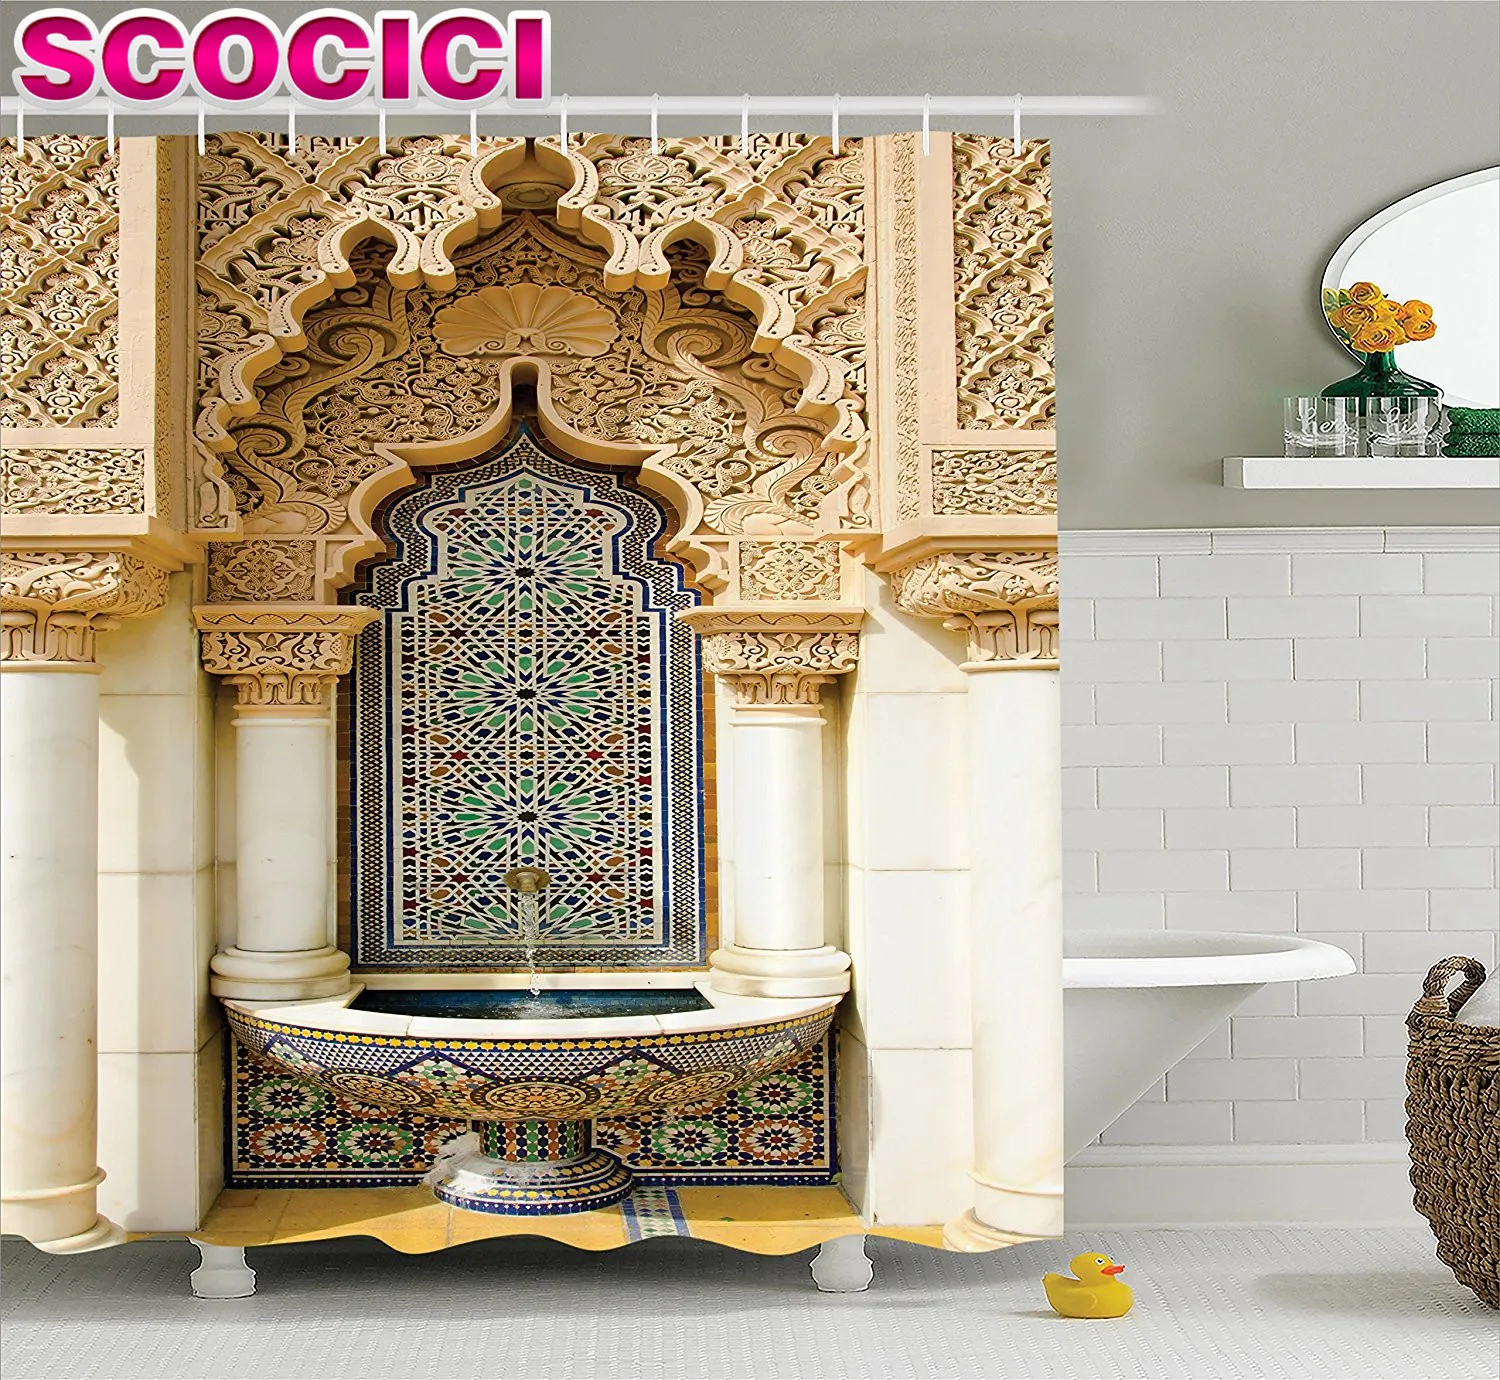 Marockansk inredning dusch gardin vintage byggnad design islamisk bostad konst historisk yttre fasad mosaik bild polyester fabr